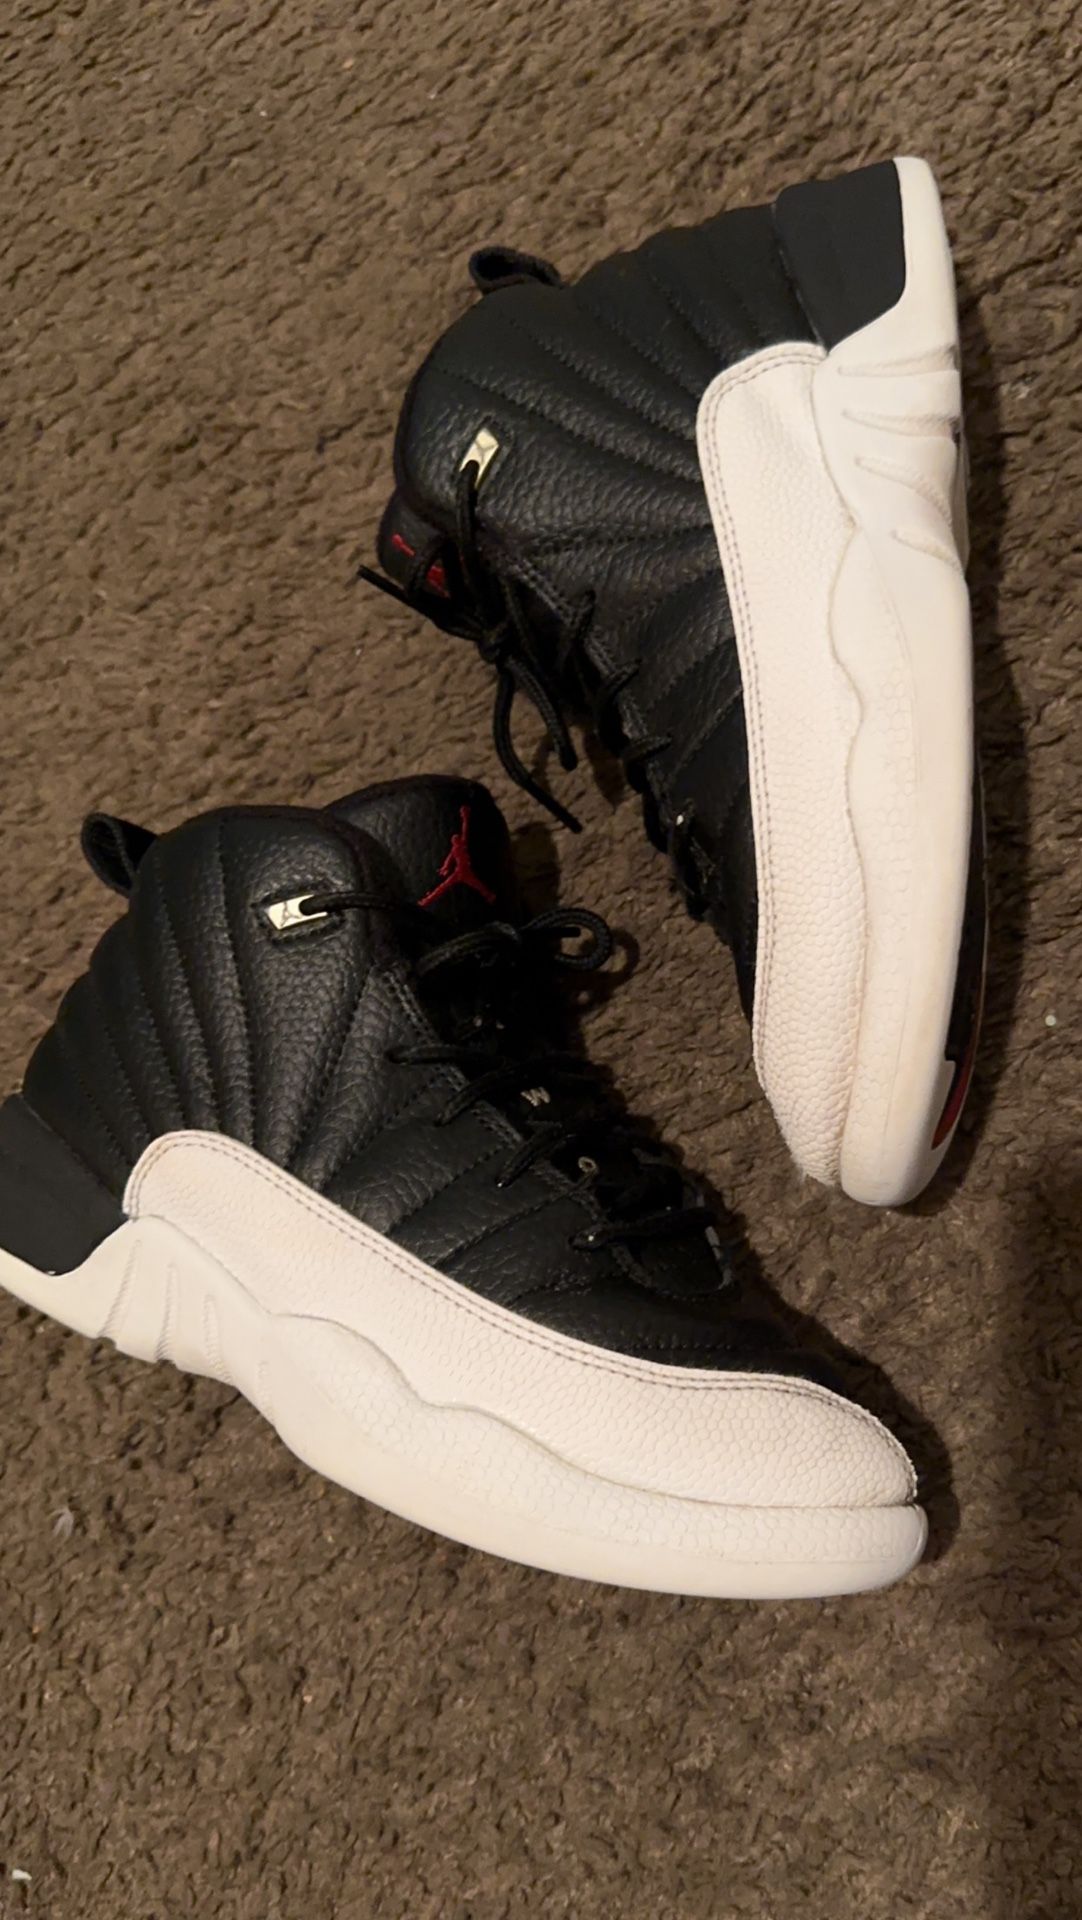 Jordan 12s Size 3Y $45